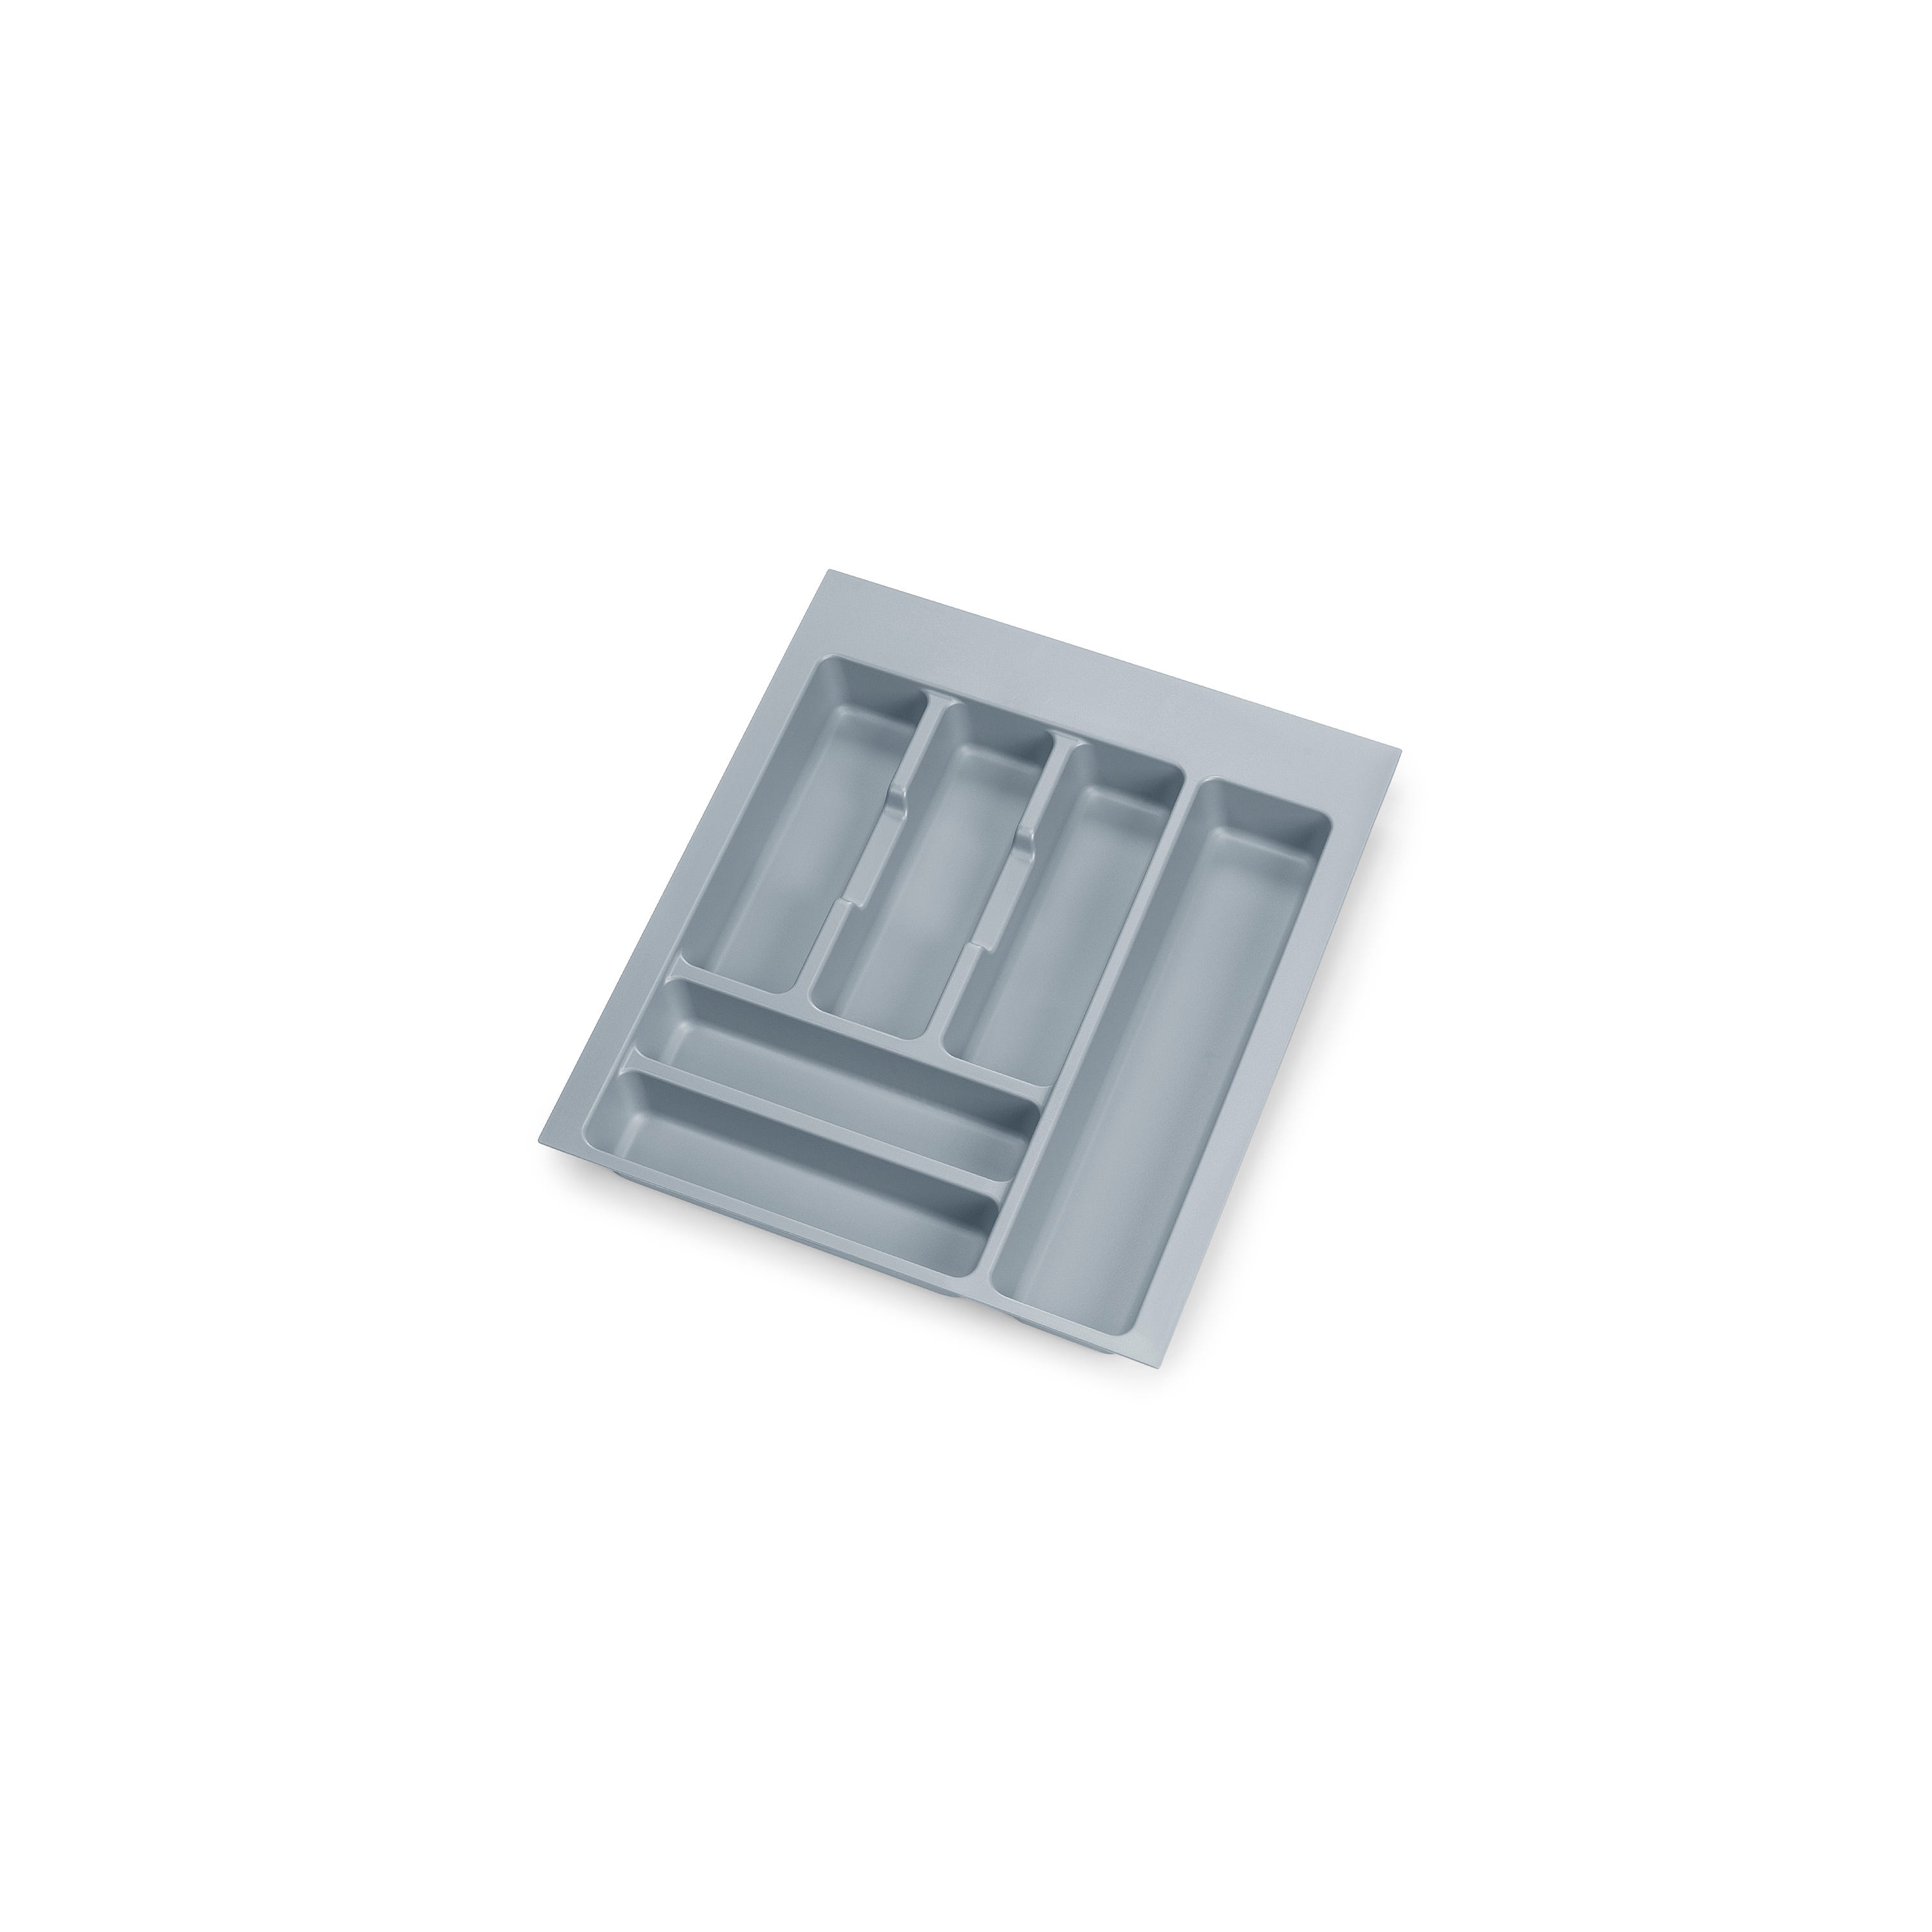 DELINIA - Range-couverts pour tiroir - L. 70,7 x l. 46,2 cm - plastique -  gris foncé 